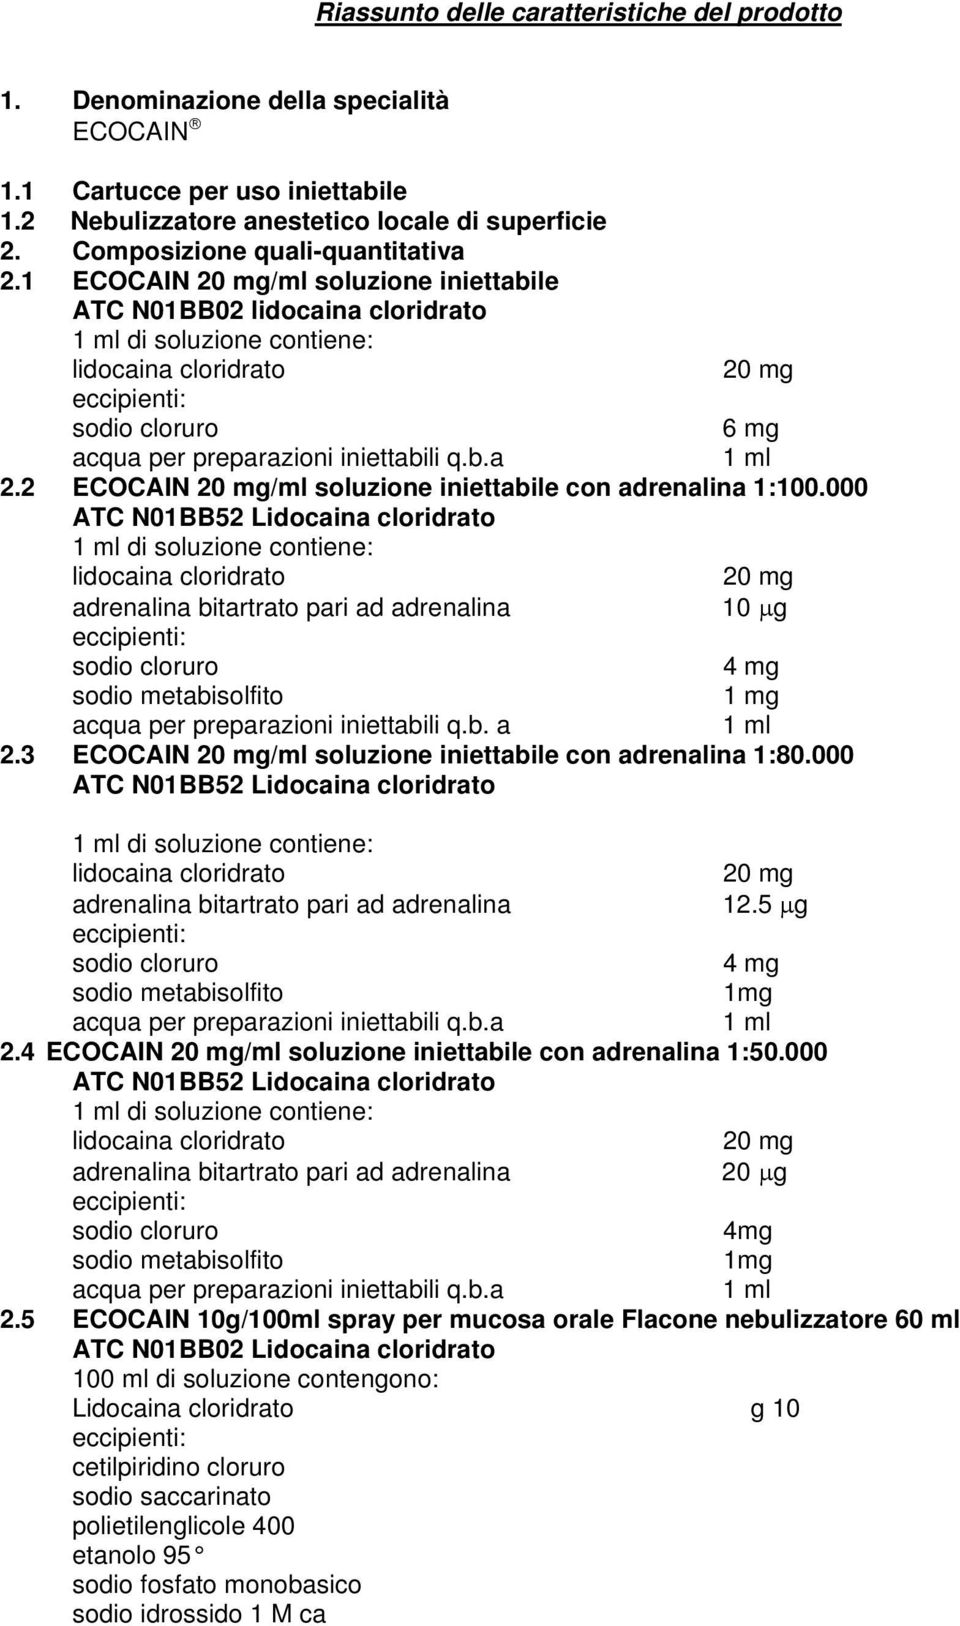 000 di soluzione contiene: 10 μg 4 mg 1 mg acqua per preparazioni iniettabili q.b. a 2.3 ECOCAIN /ml soluzione iniettabile con adrenalina 1:80.000 di soluzione contiene: 12.5 μg 4 mg 1mg 2.